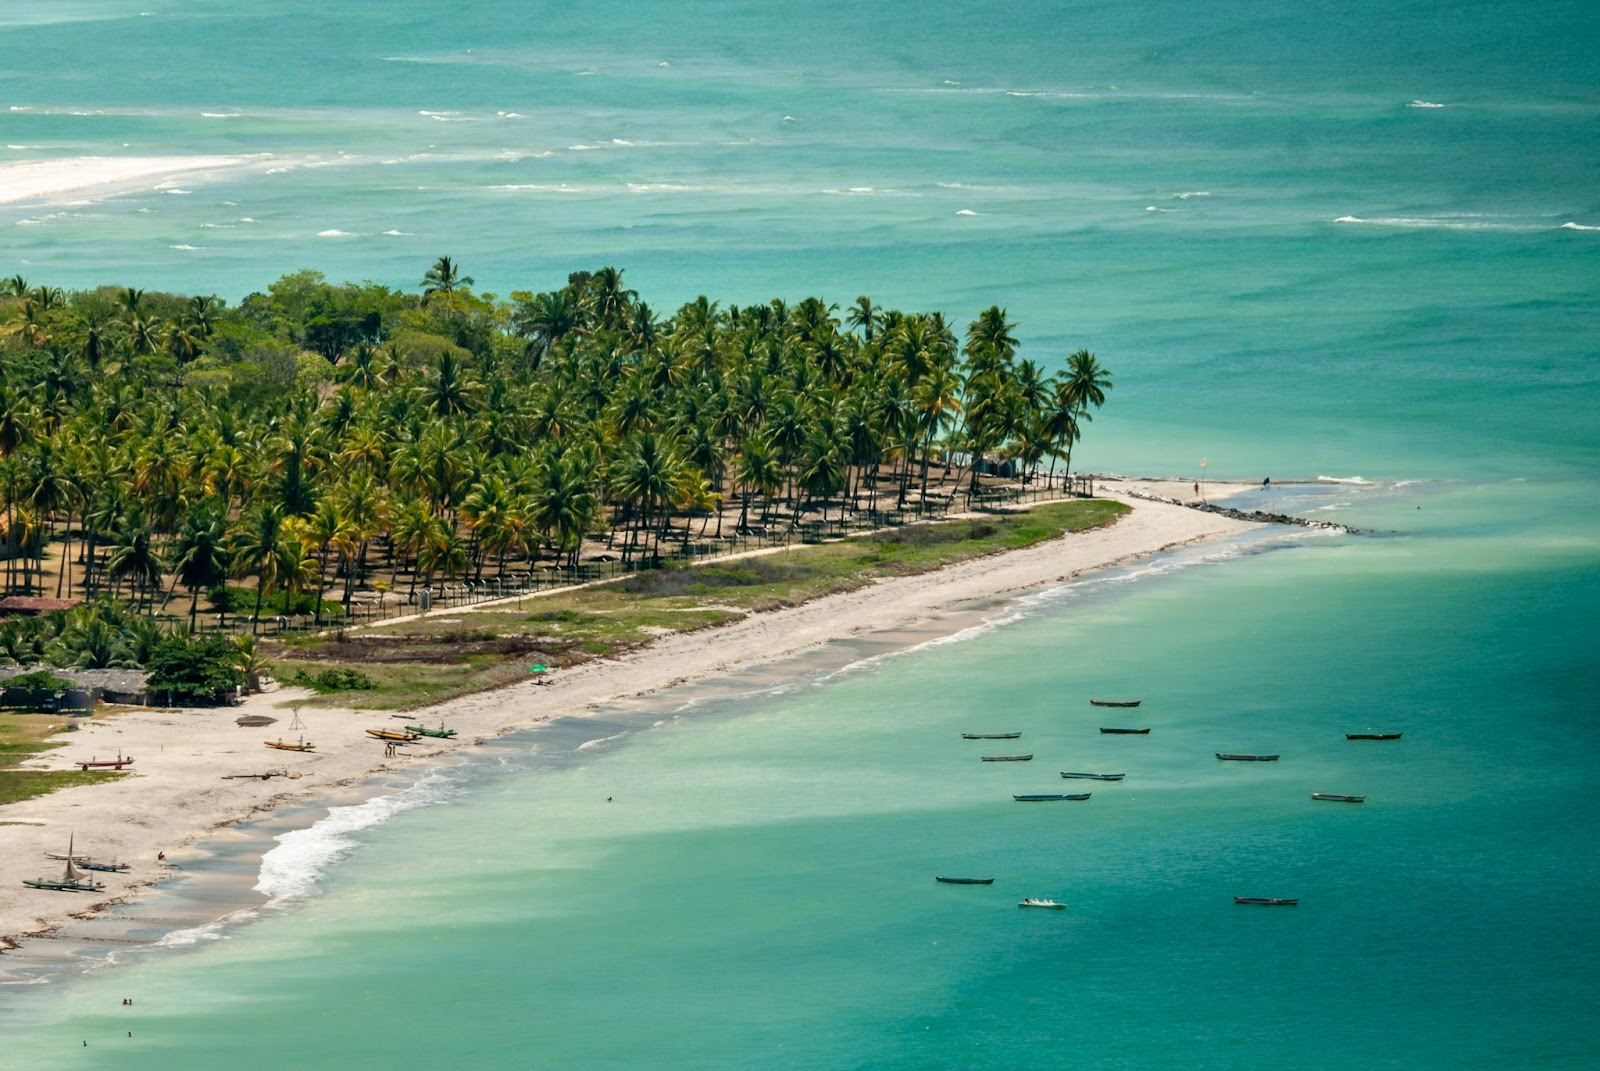 Foto aérea de parte da Ilha de Itamaracá. Pontal banhado pelo mar azul claro, com faixa de areia branca, gramado e muitos coqueiros verdes